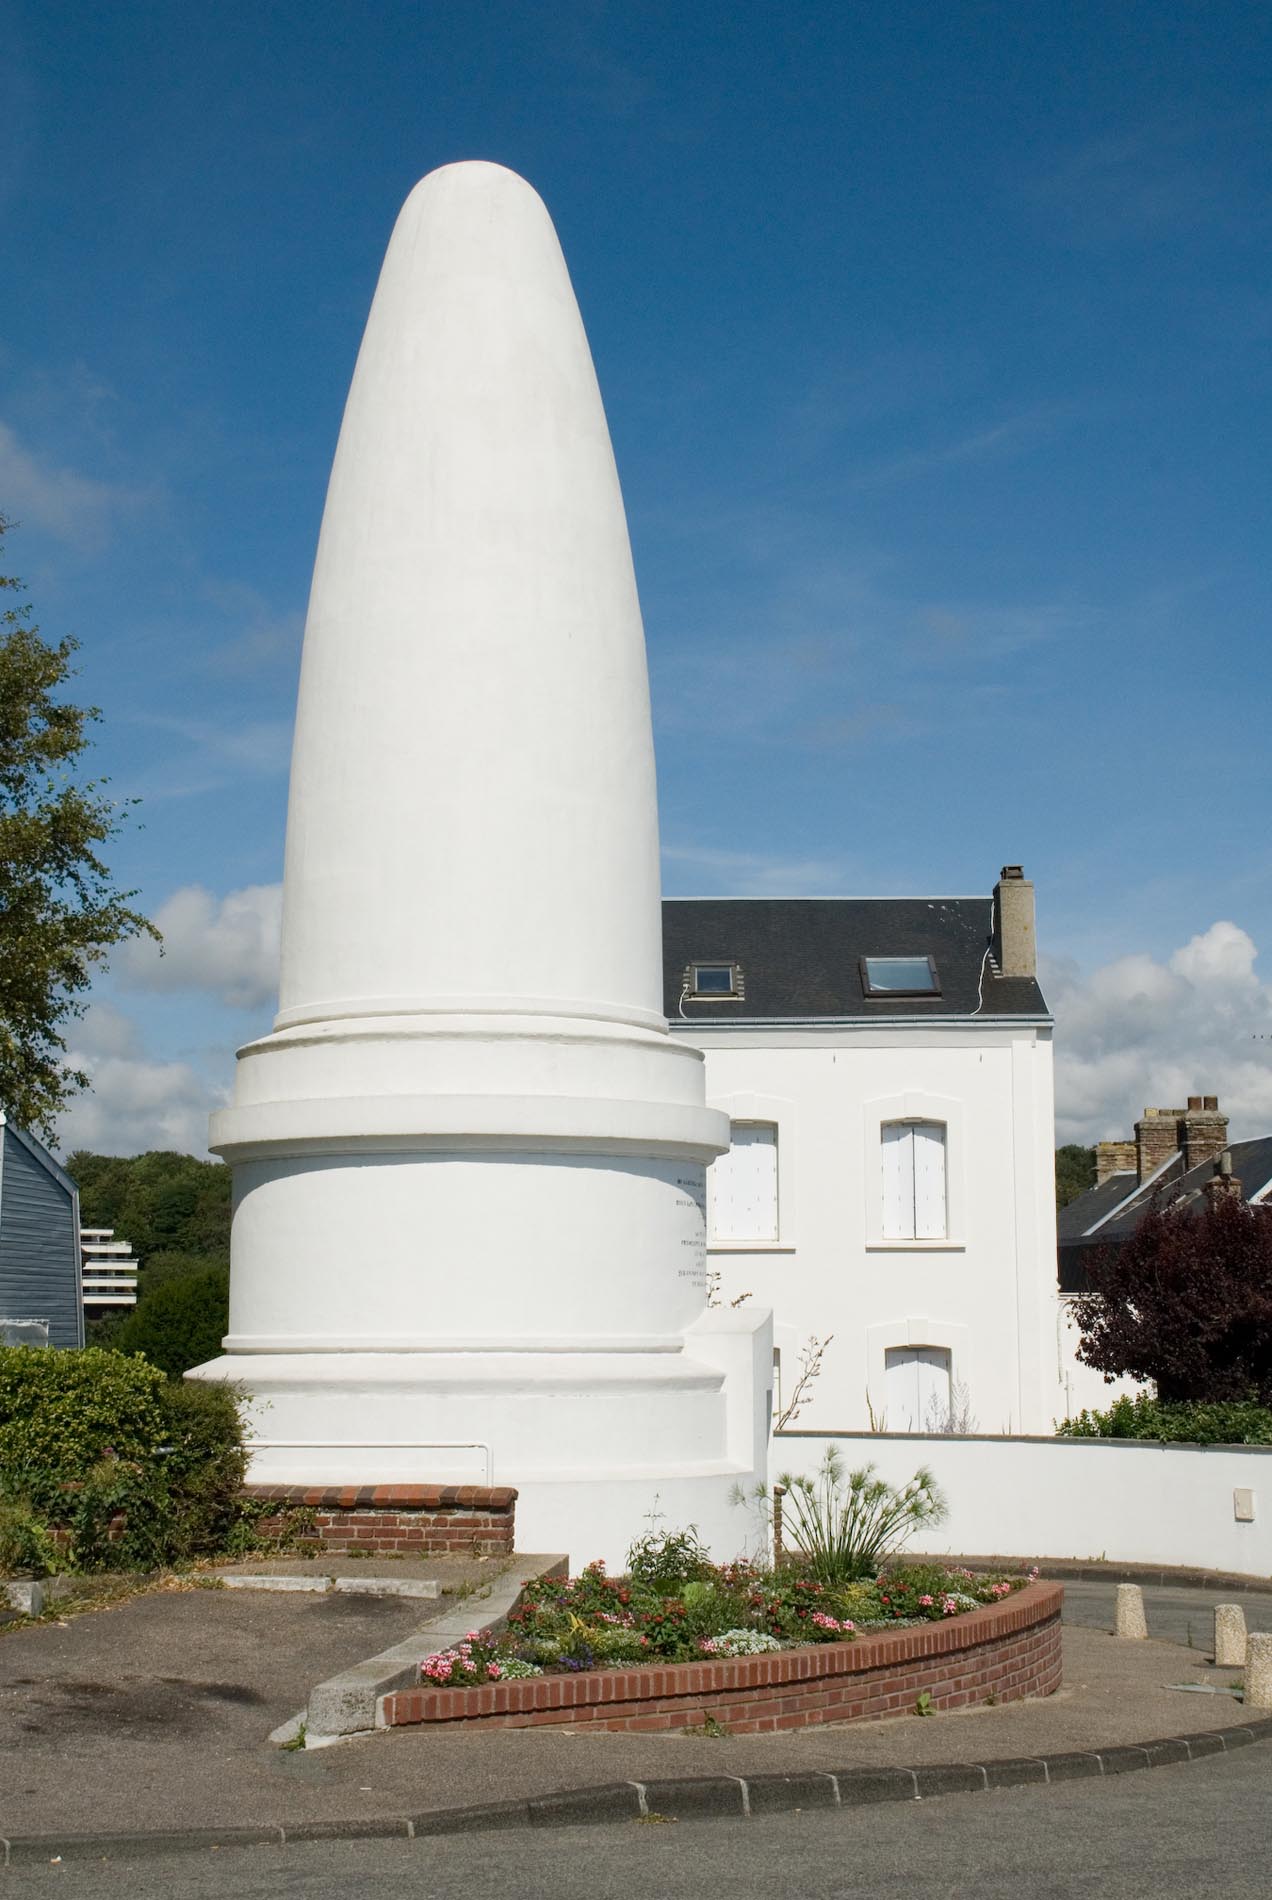 Das Denkmal "Pain de Sucre (Zuckerhut)" wurde 1852 in Gedenken an Général-Comte Lefebvre-Desnouëttes von seiner Witwe Stéphanie Rollier errichtet Sein Schiff sank 1822 vor der irländischen Küste.